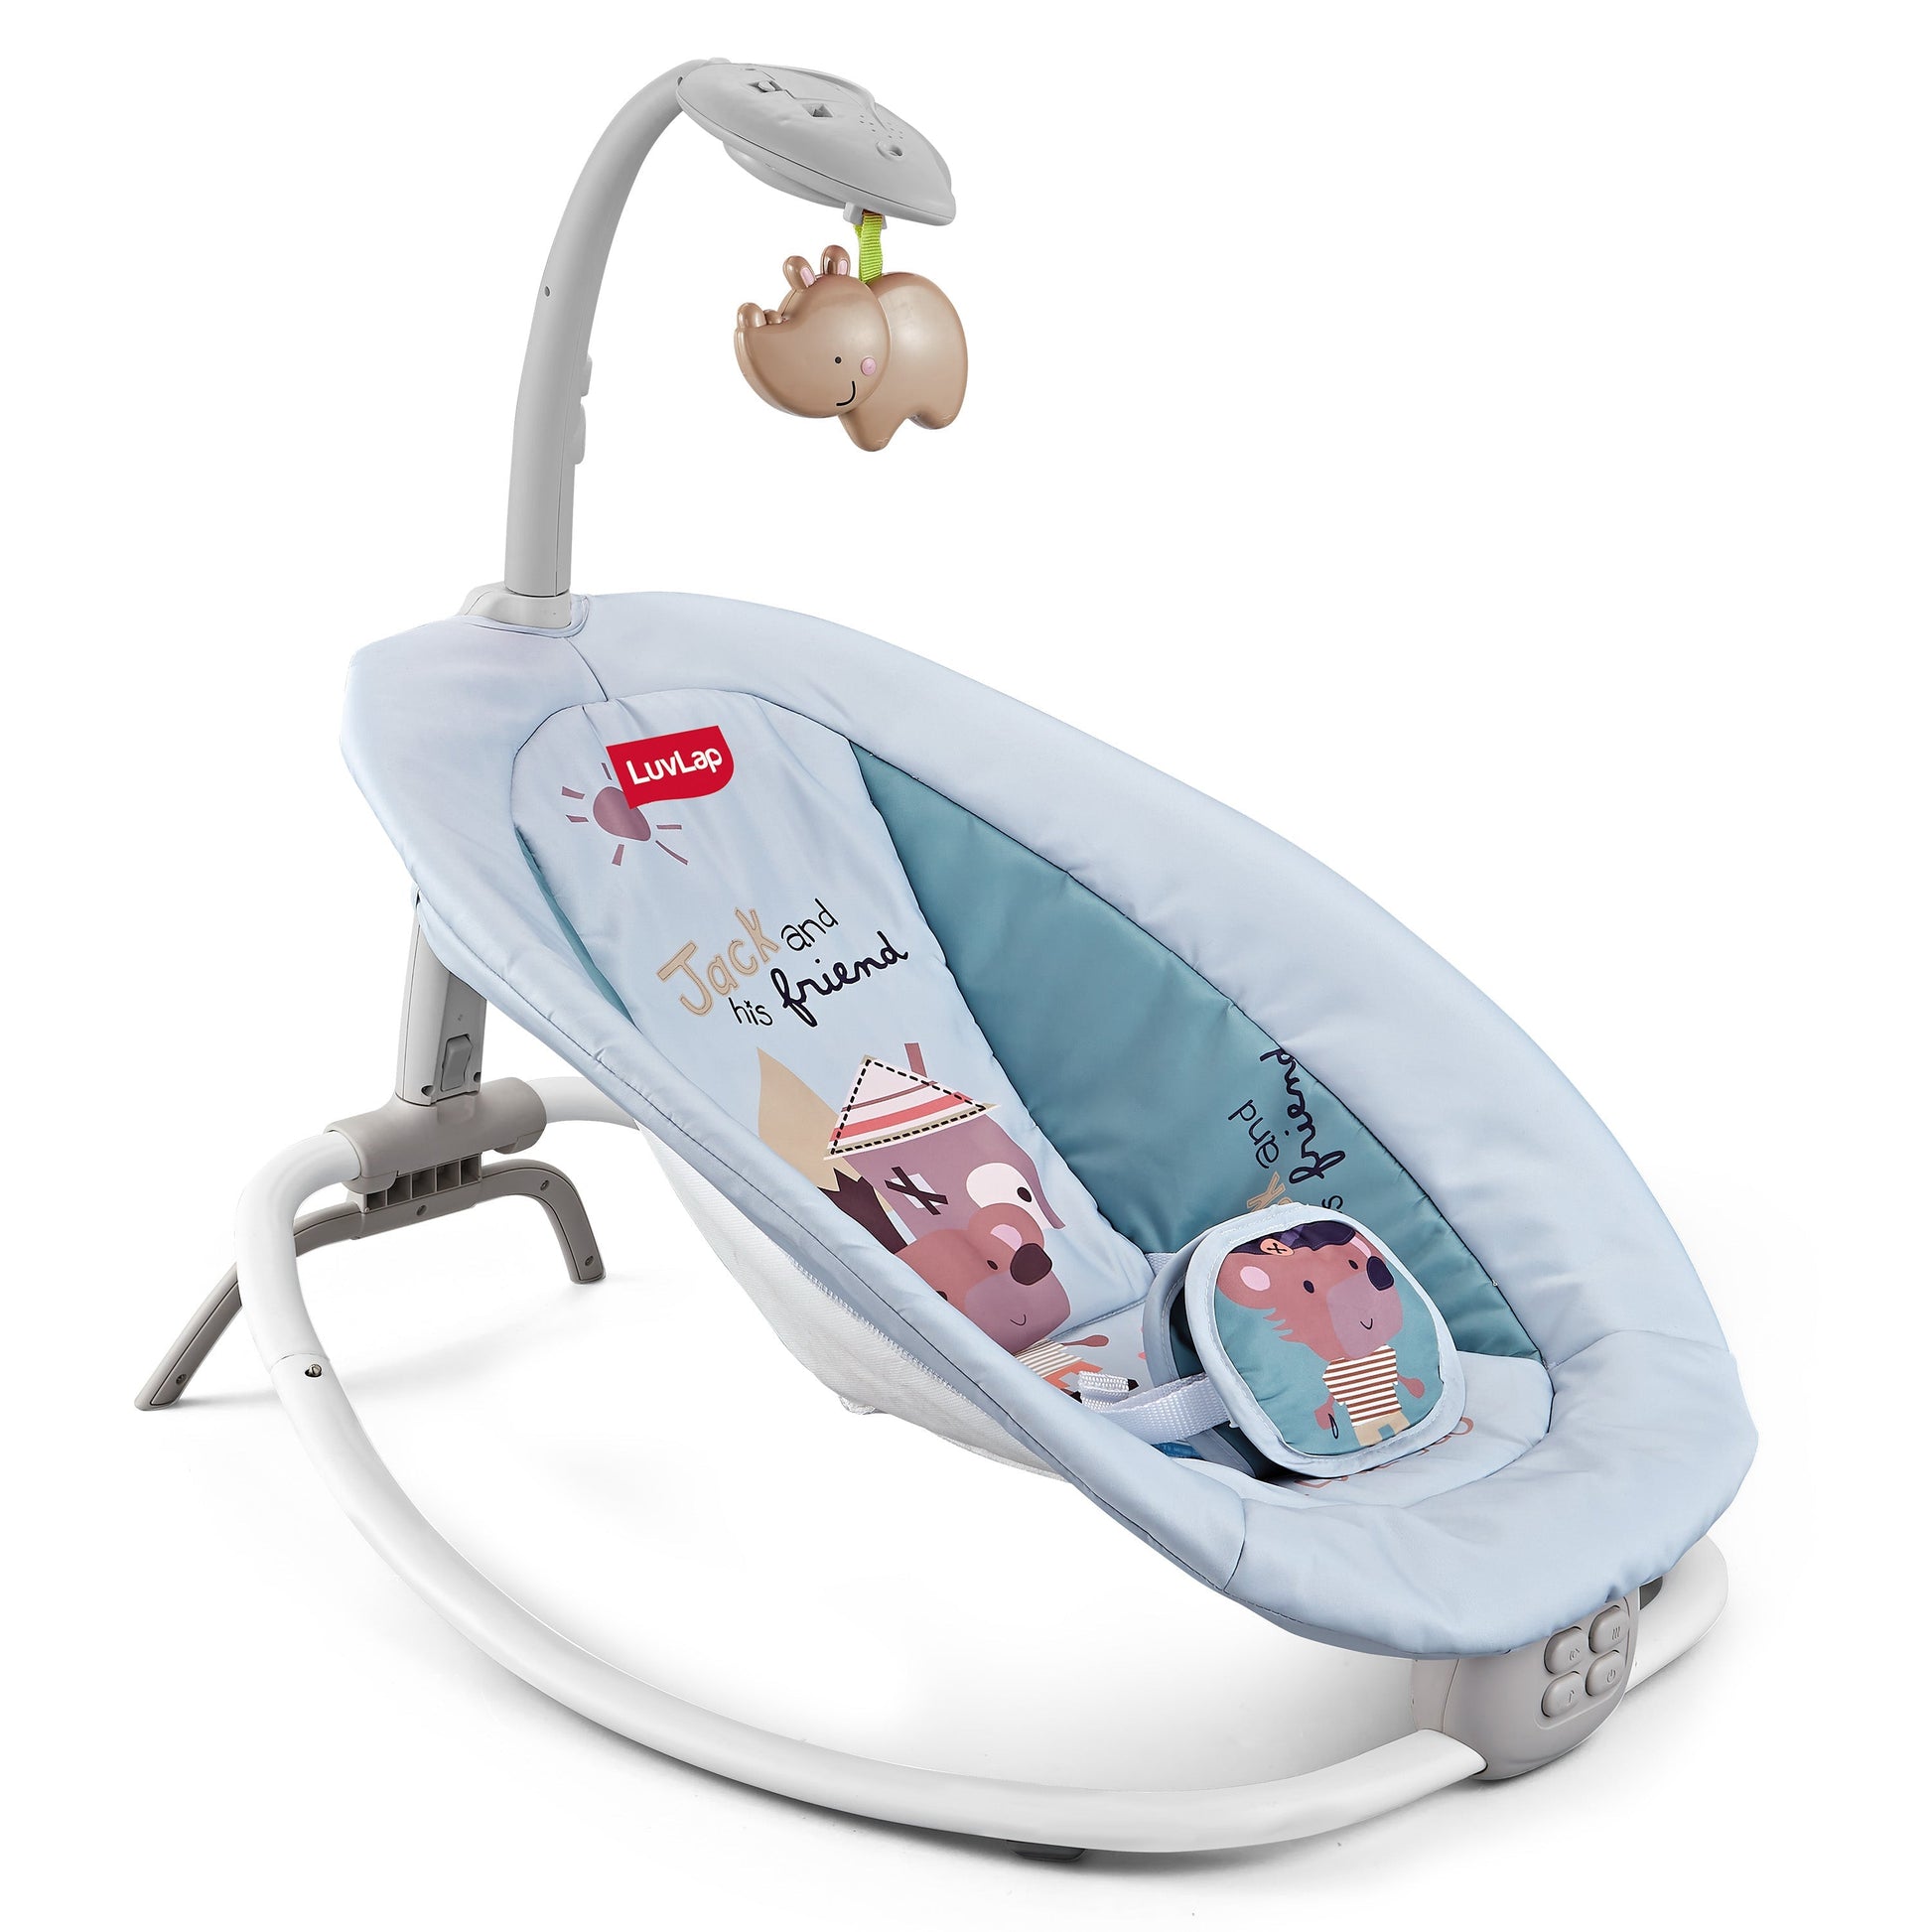 BABY JOY Baby Swings for Infants, Portable Rocker w/ 5 Swing